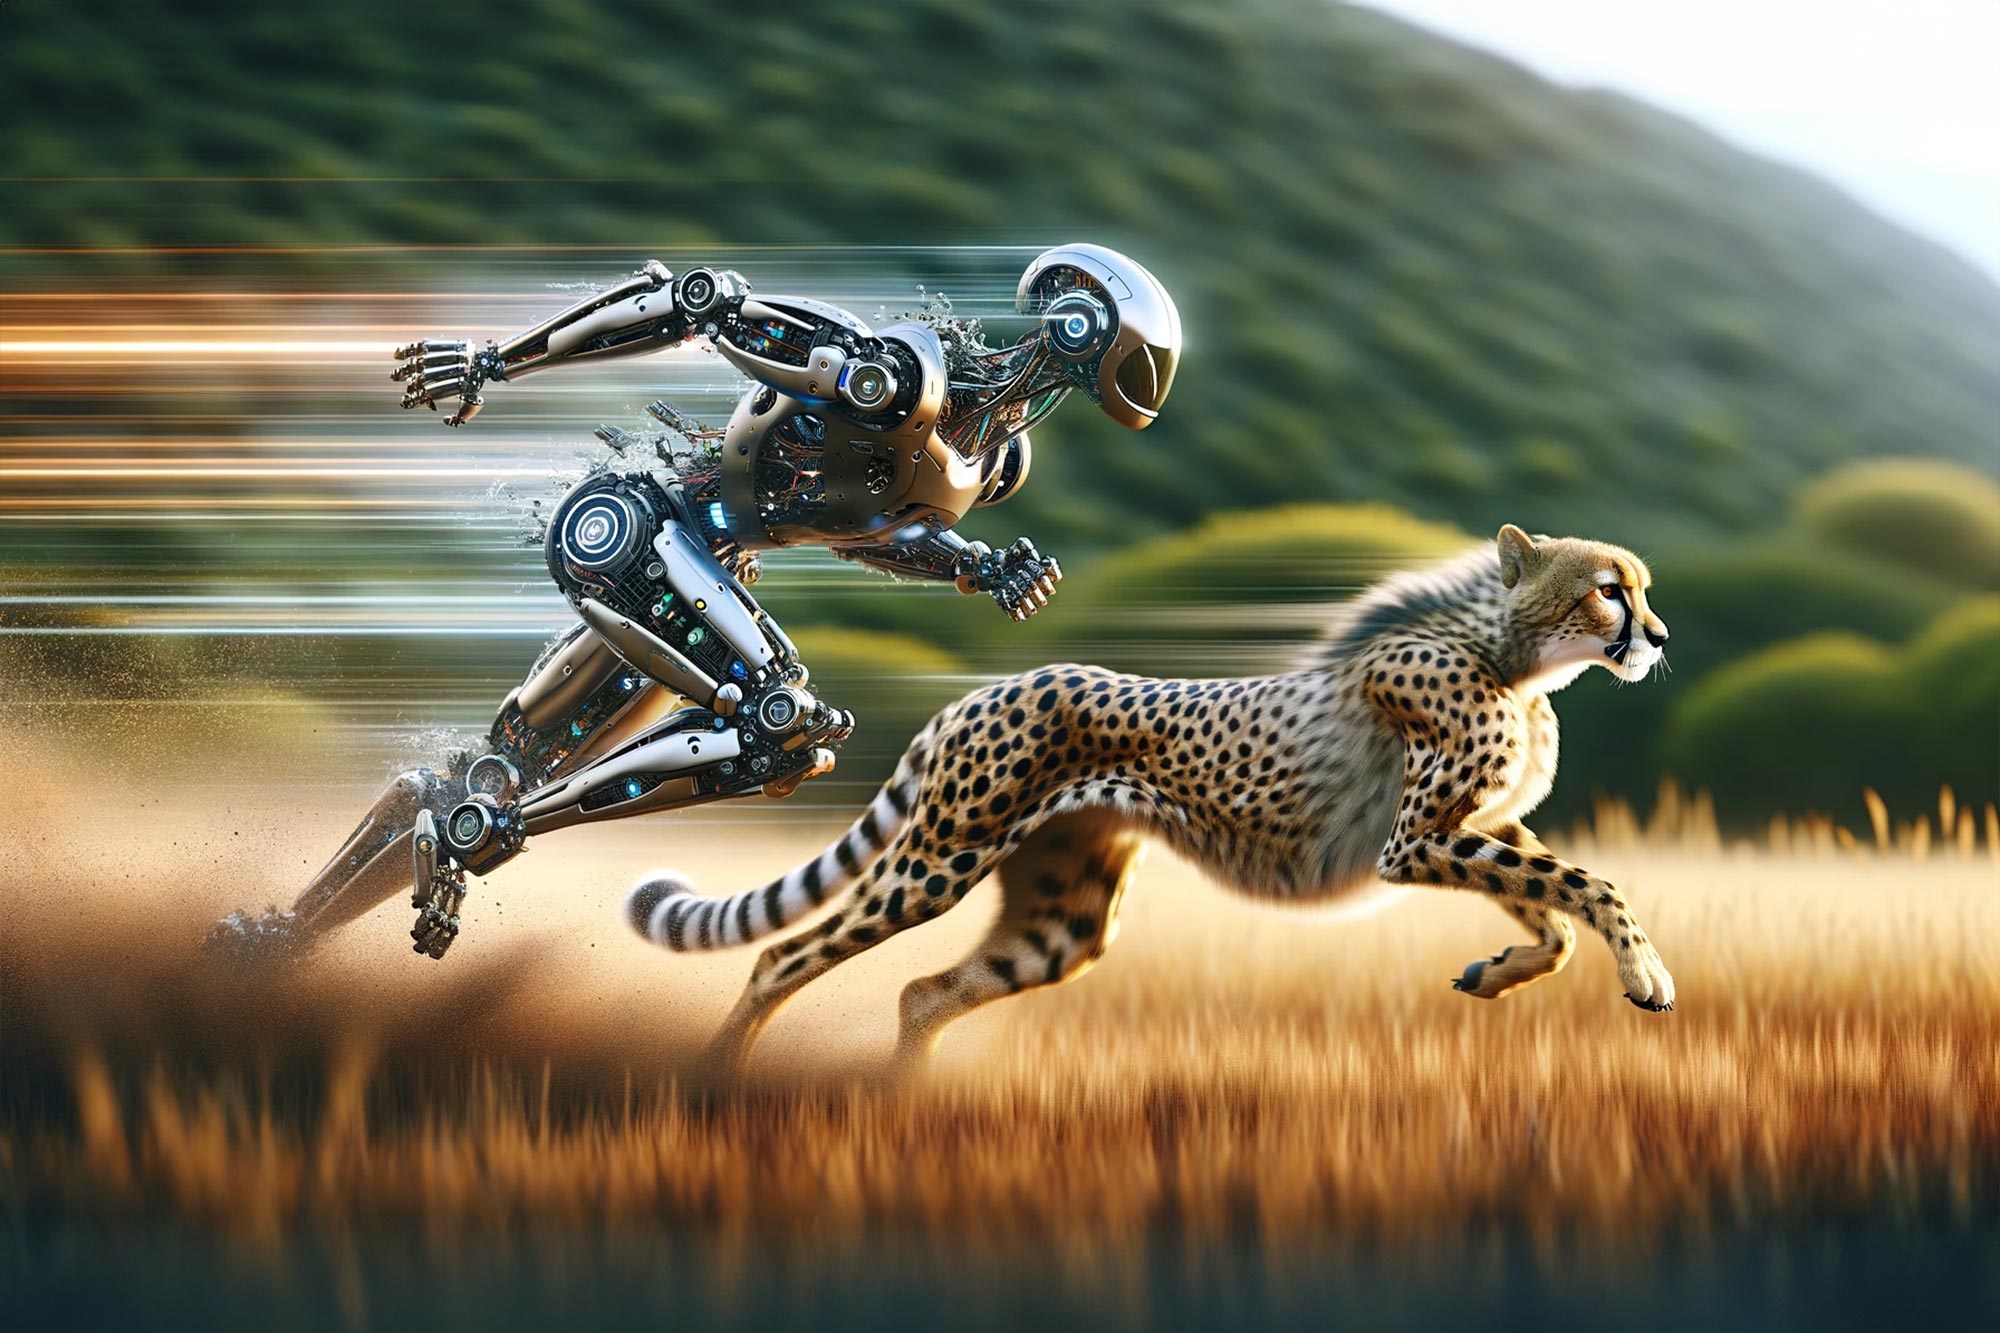 Robot-Speed-Race-Cheetah-Concept.jpg